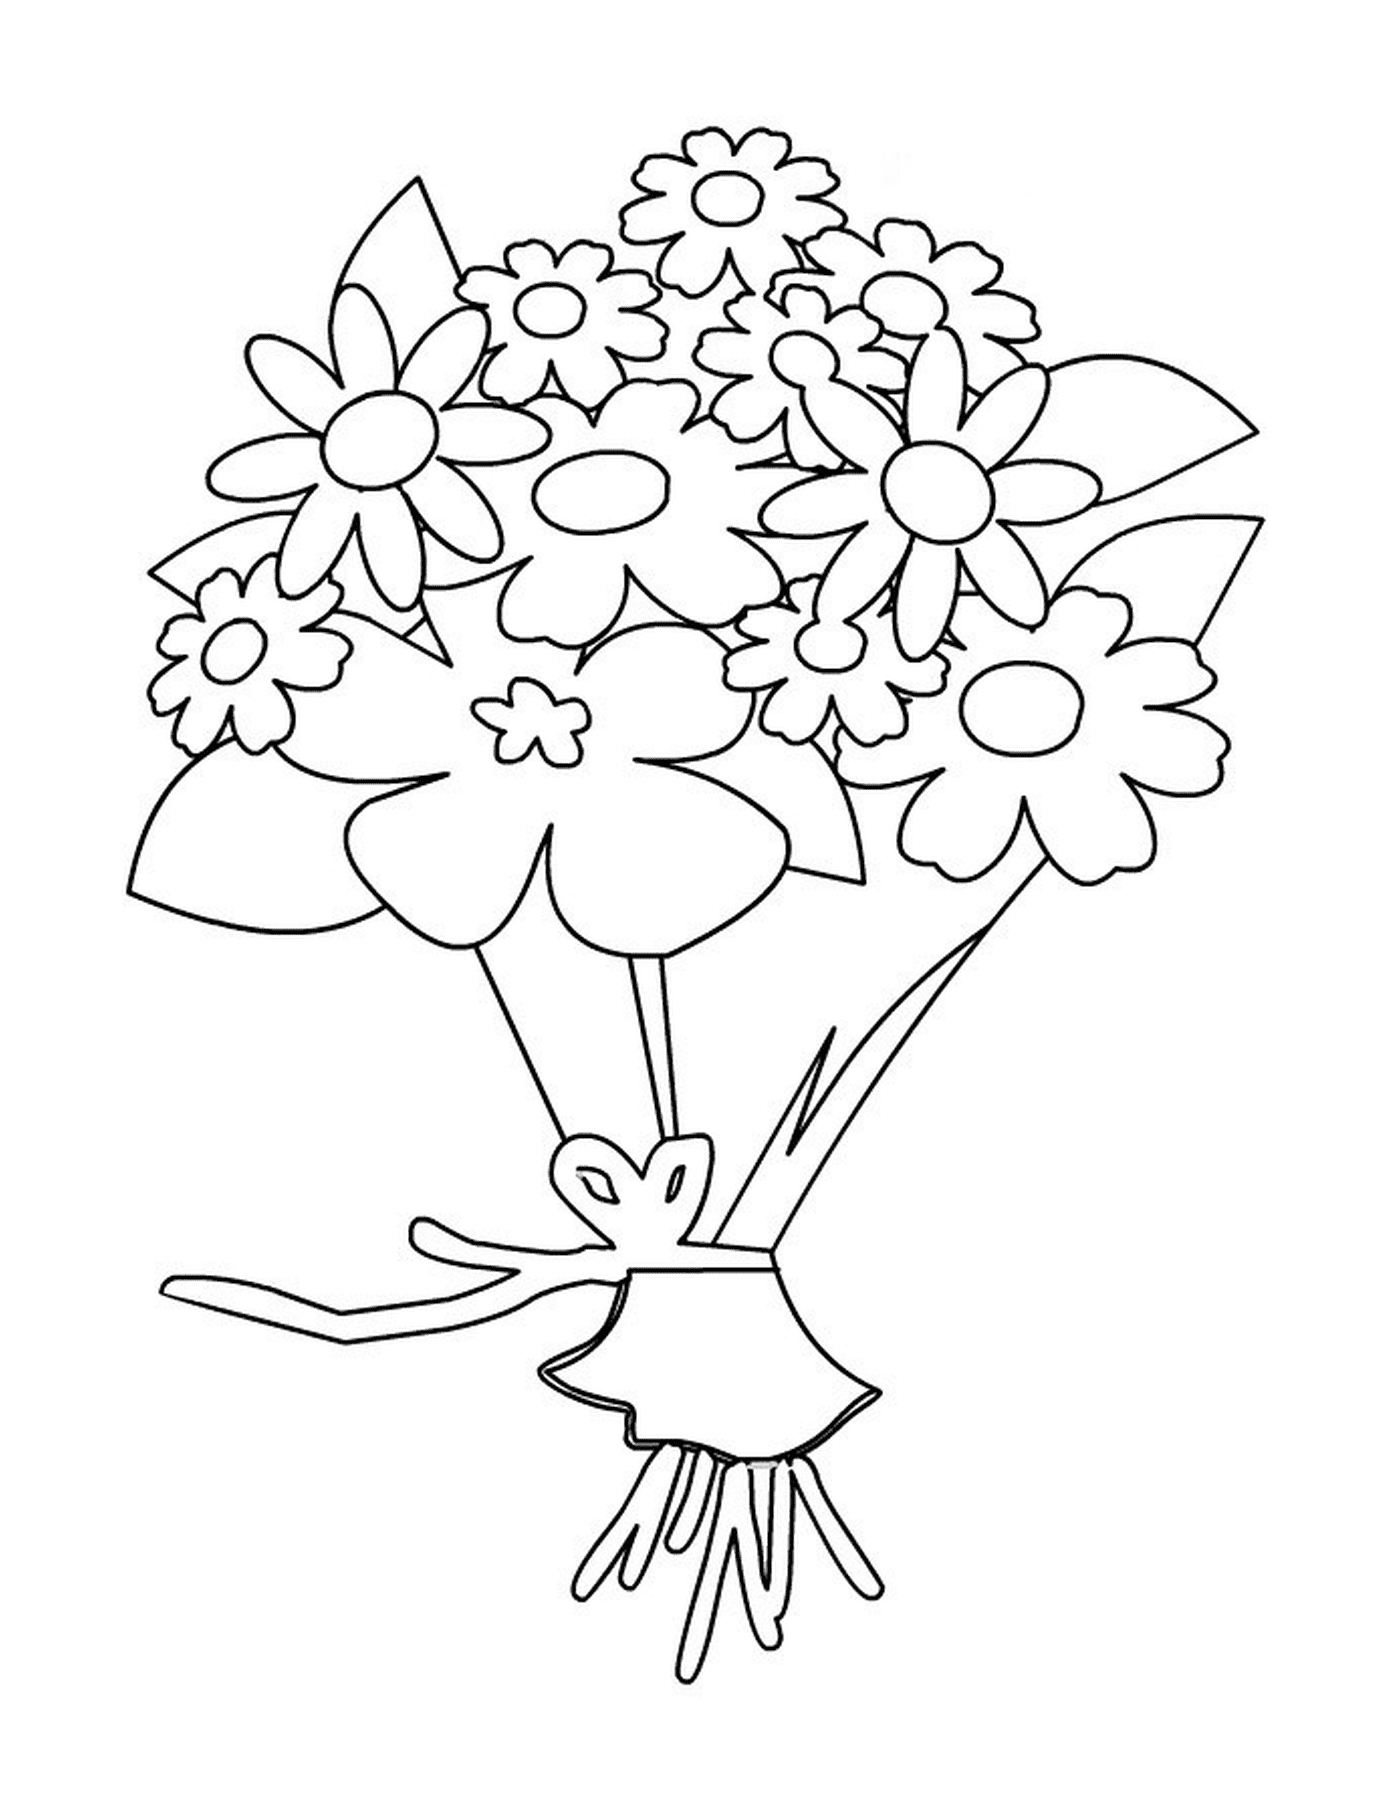  टाइटैनिक भाषा में फूलों का एक छोटा - सा गुलदस्ता 